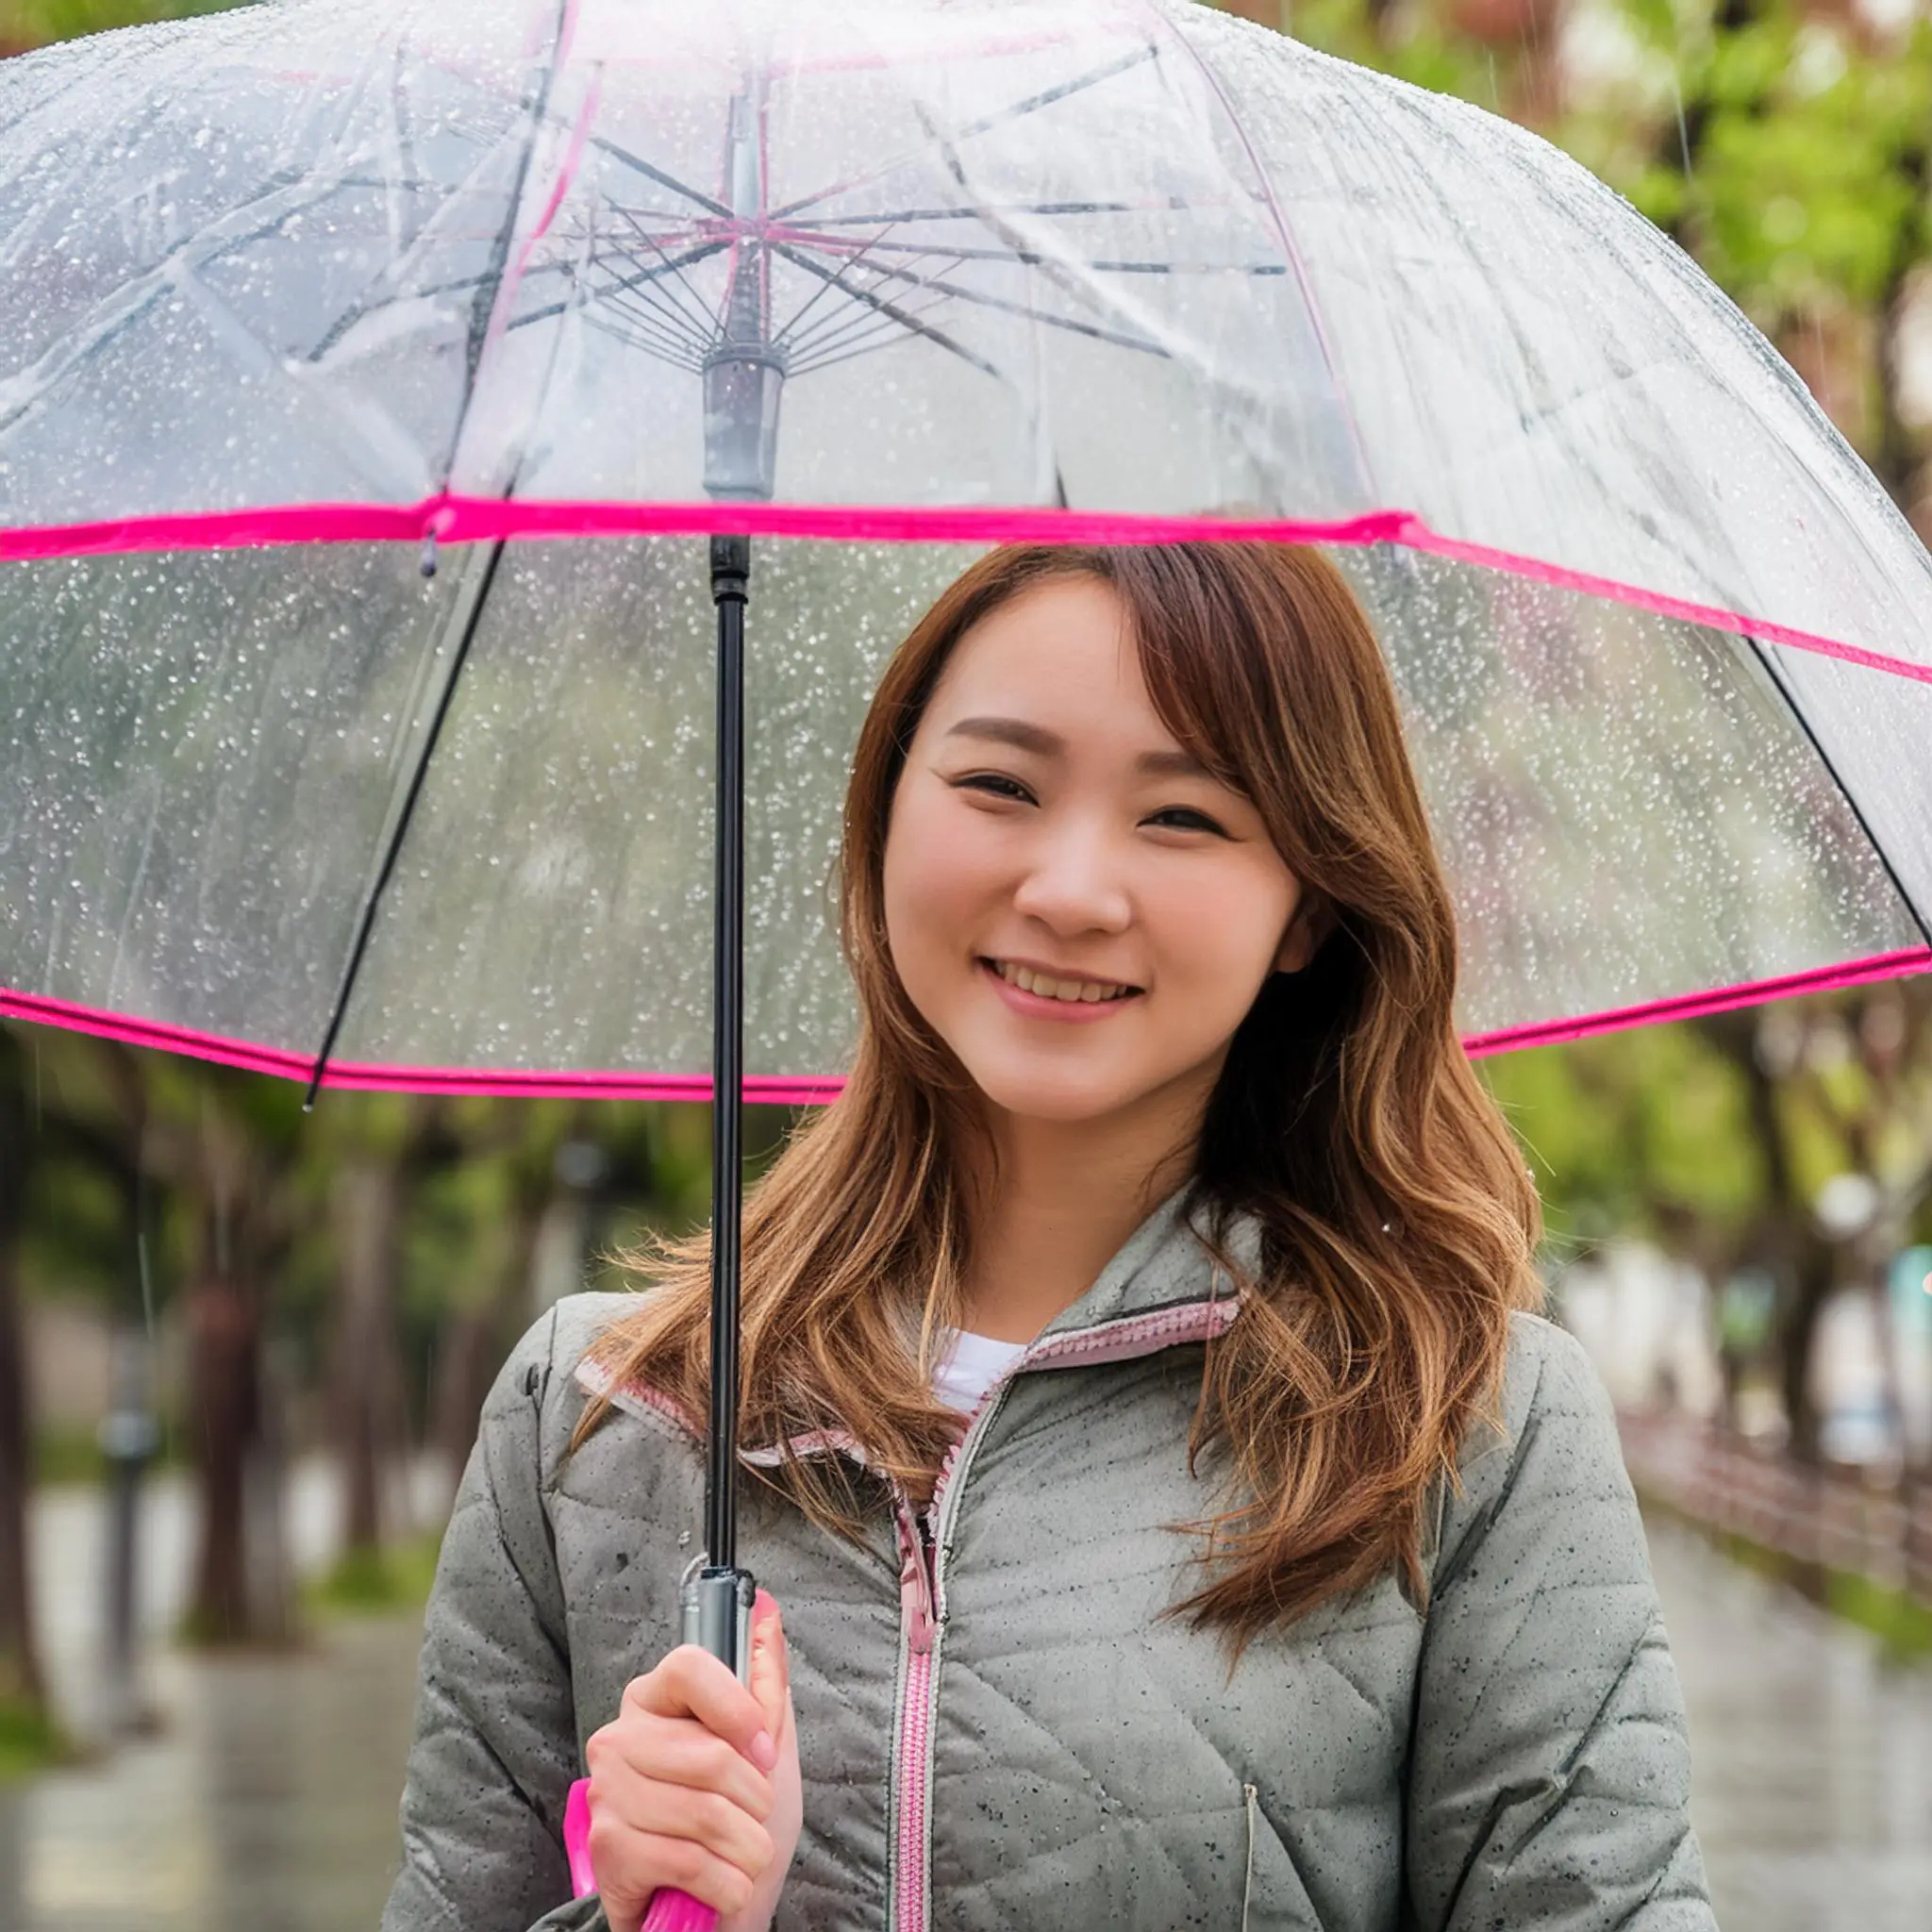 ビニール傘をさしている女性。土砂降り雨。真正面。笑顔。